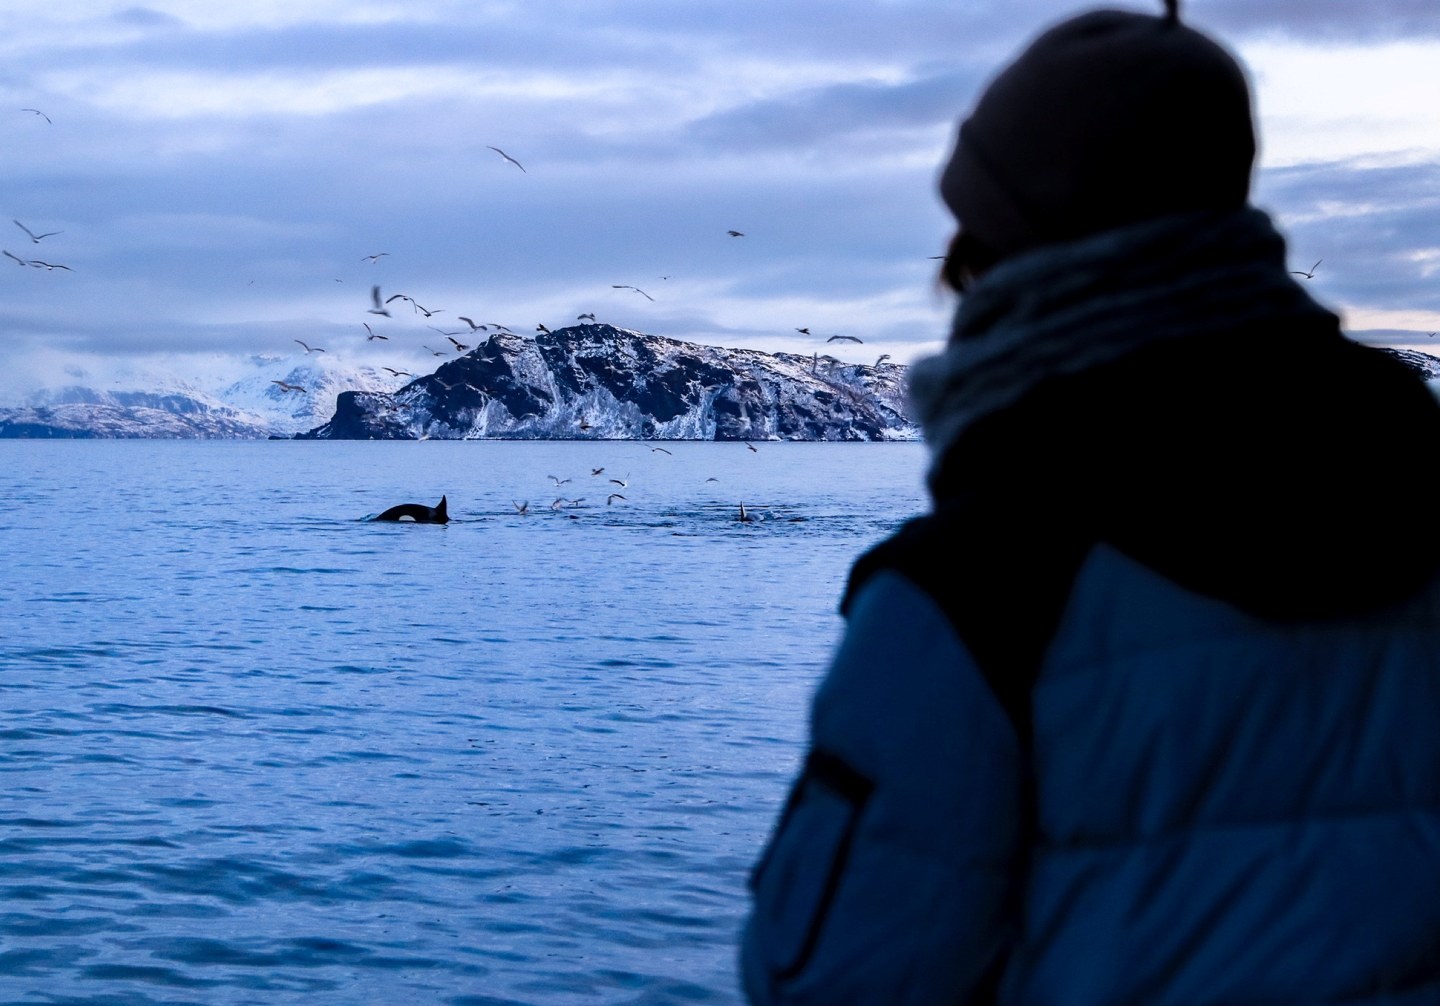 En person som betrakter hvaler i havet, sett bakfra. En snødekt øy og fugler på himmelen sees i bakgrunnen. Foto